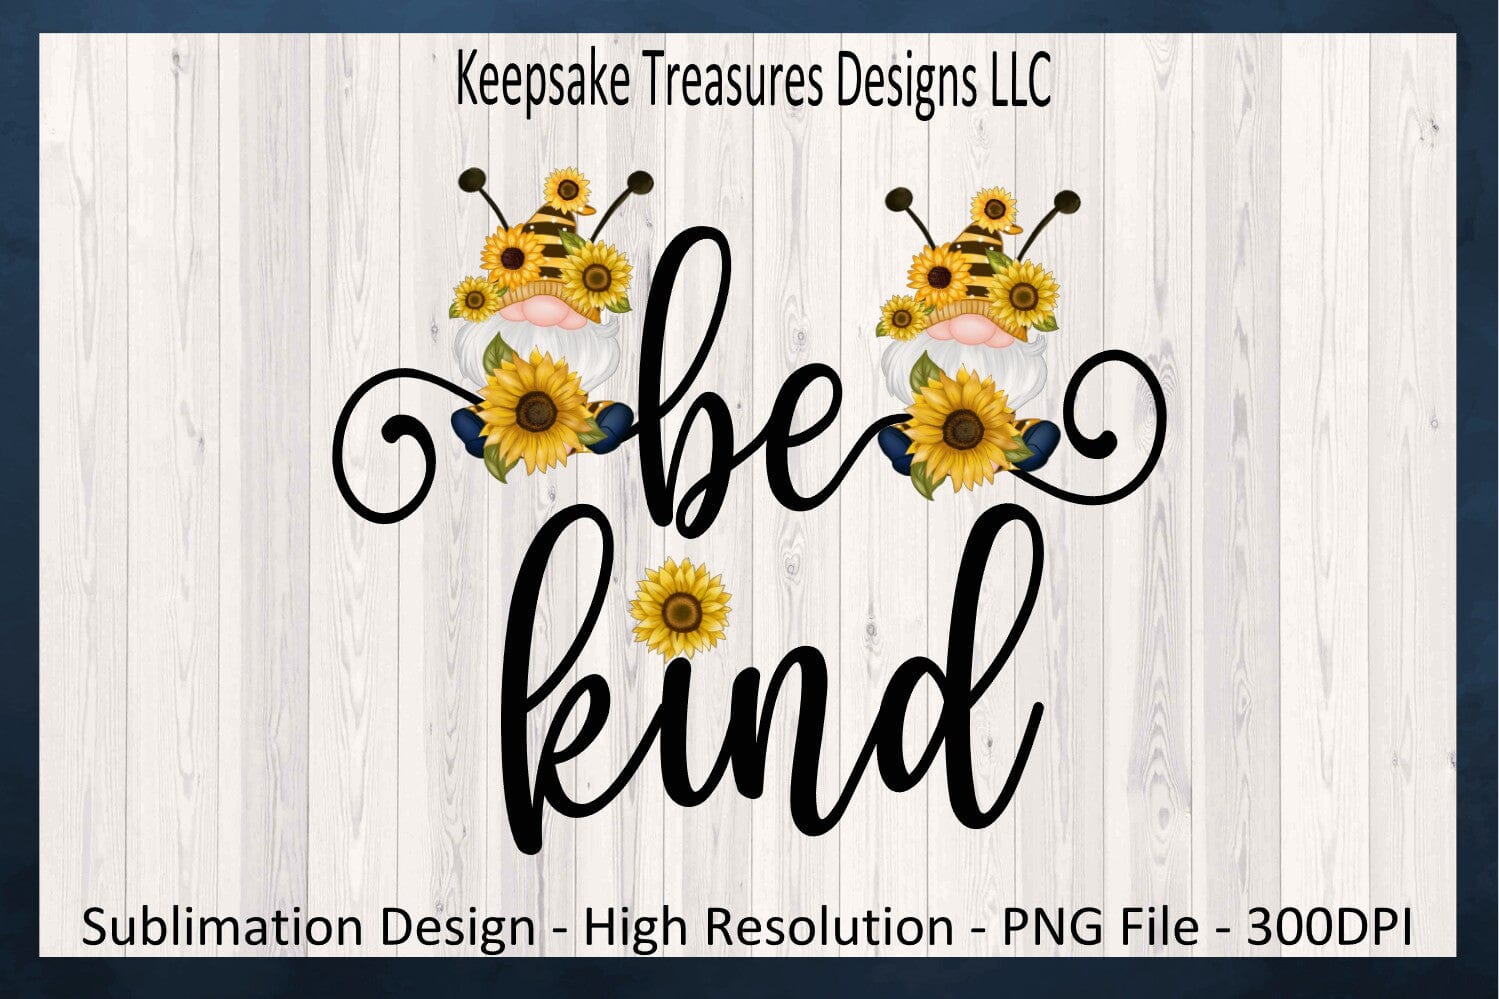 https://sofontsy.com/cdn/shop/files/be-kind-spring-sunflower-gnome-bee-gnome-sublimation-png-design-digital-download-sublimation-keepsake-treasures-designs-llc-725032_1499x.jpg?v=1699075476